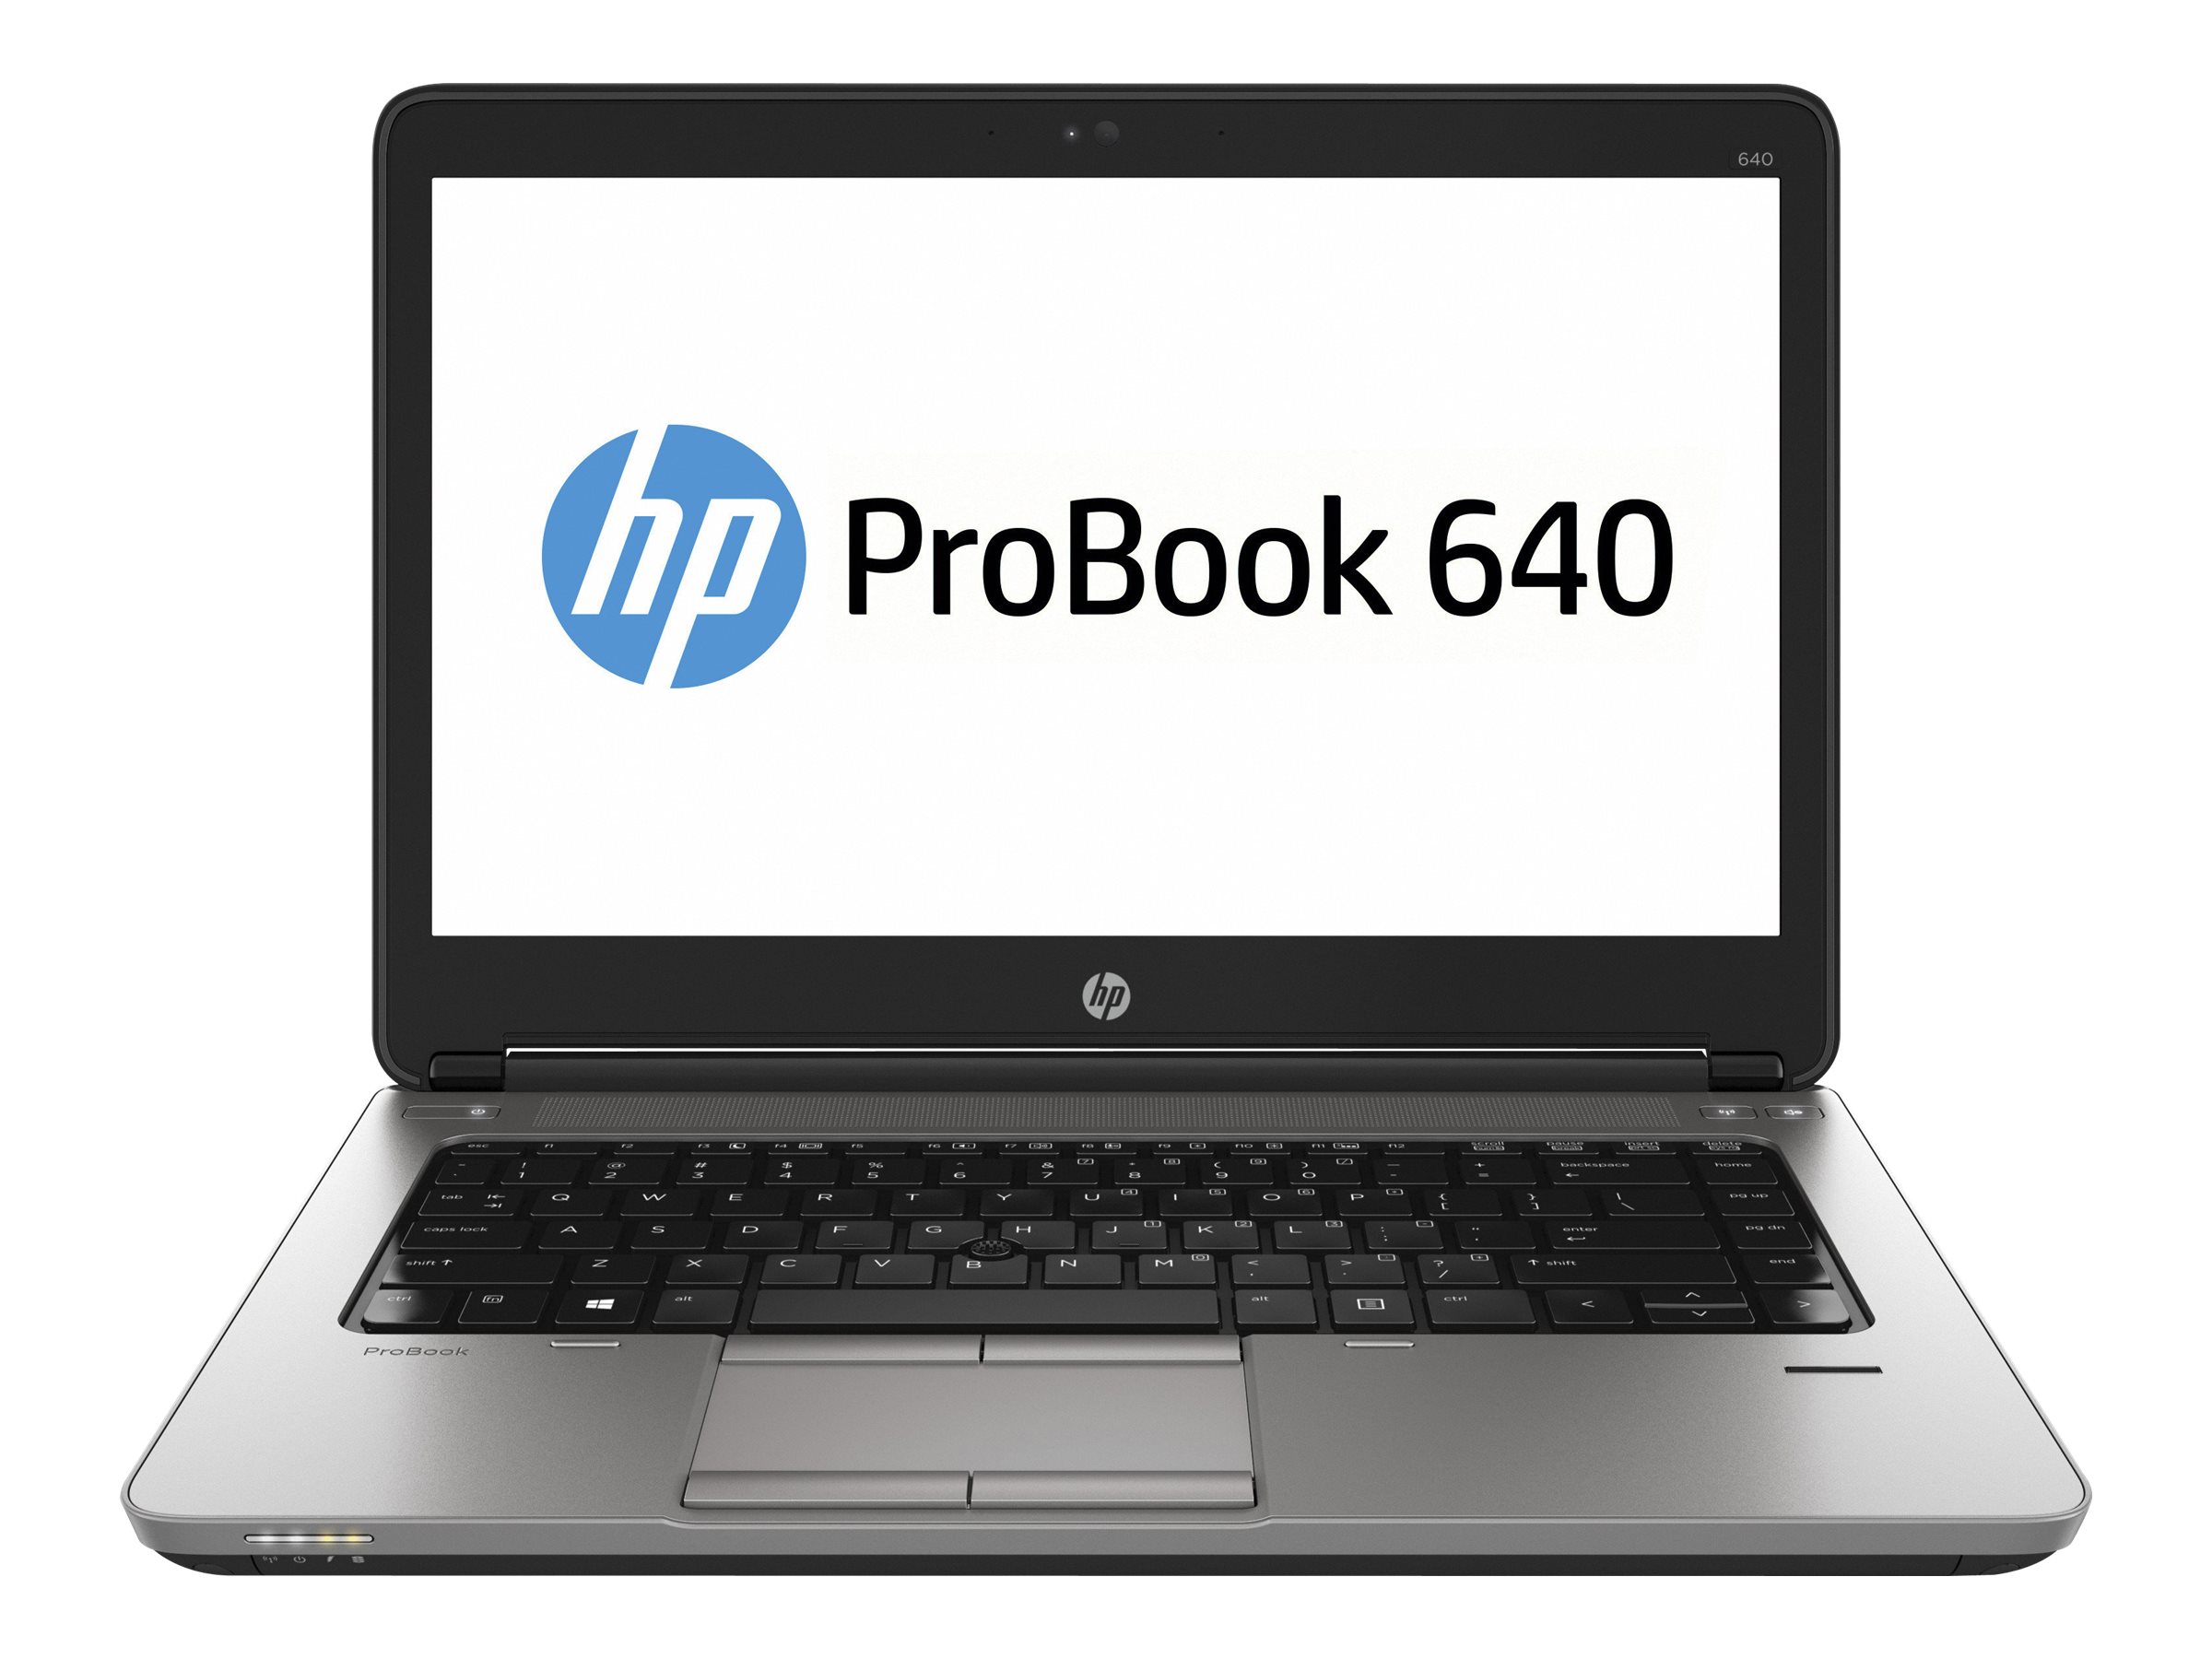 HP ProBook 640 G1 Notebook